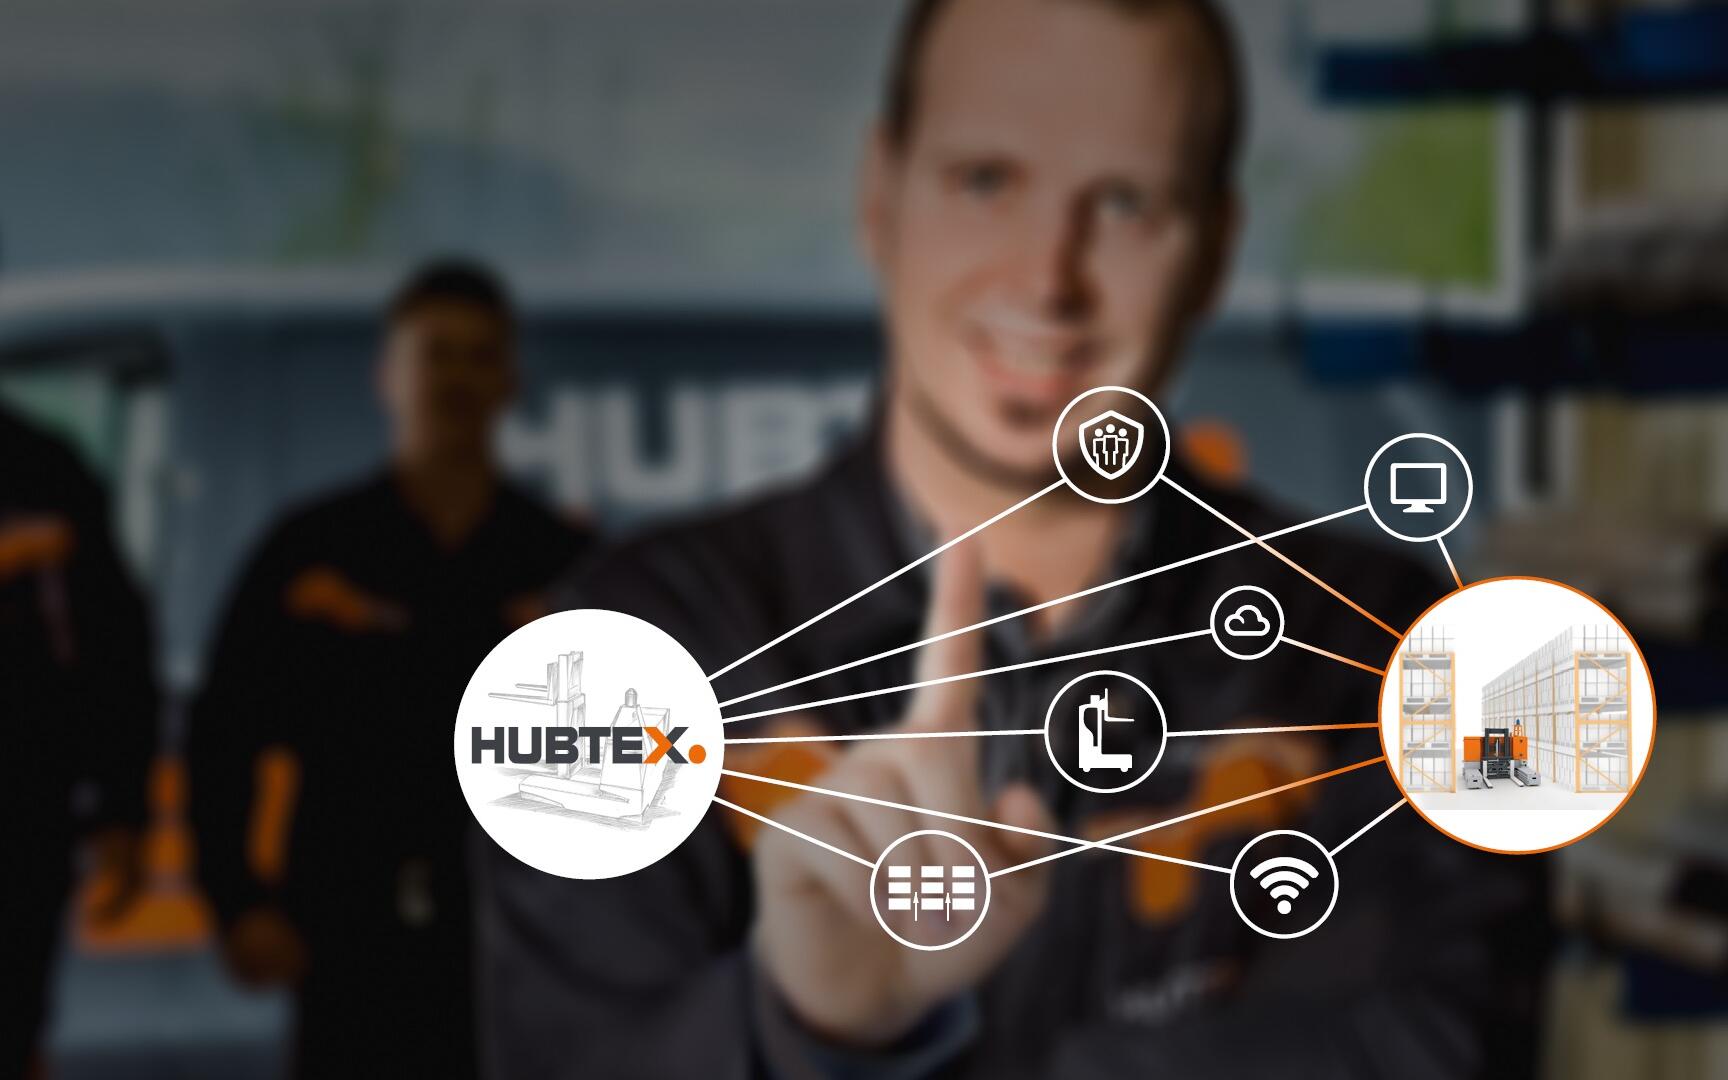 Website Automatisierung HUBTEX